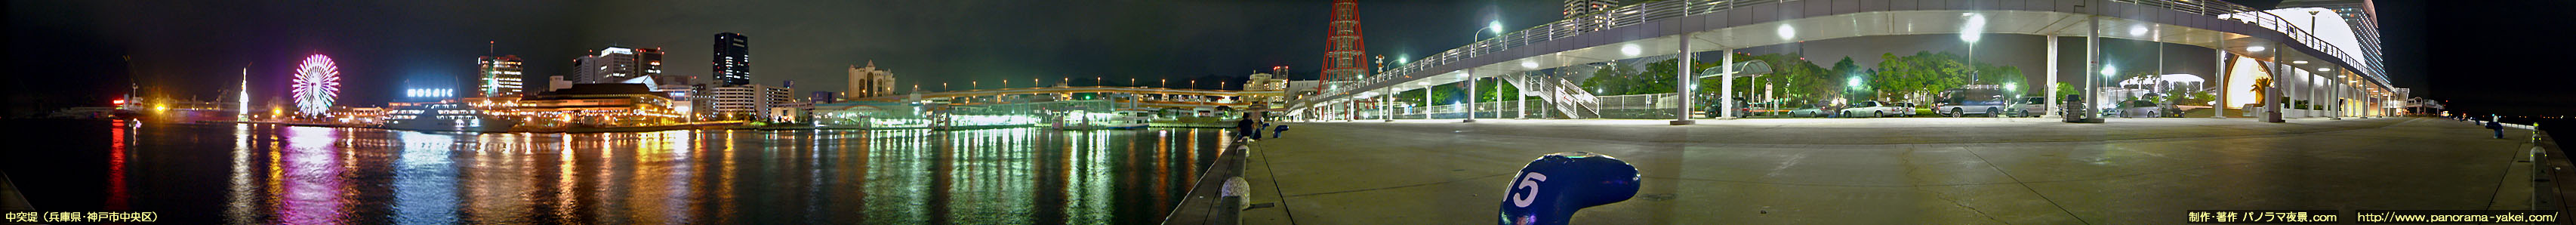 中突堤からの360度パノラマ夜景写真 ～神戸モザイク、大観覧車、メリケンパークの夜景～